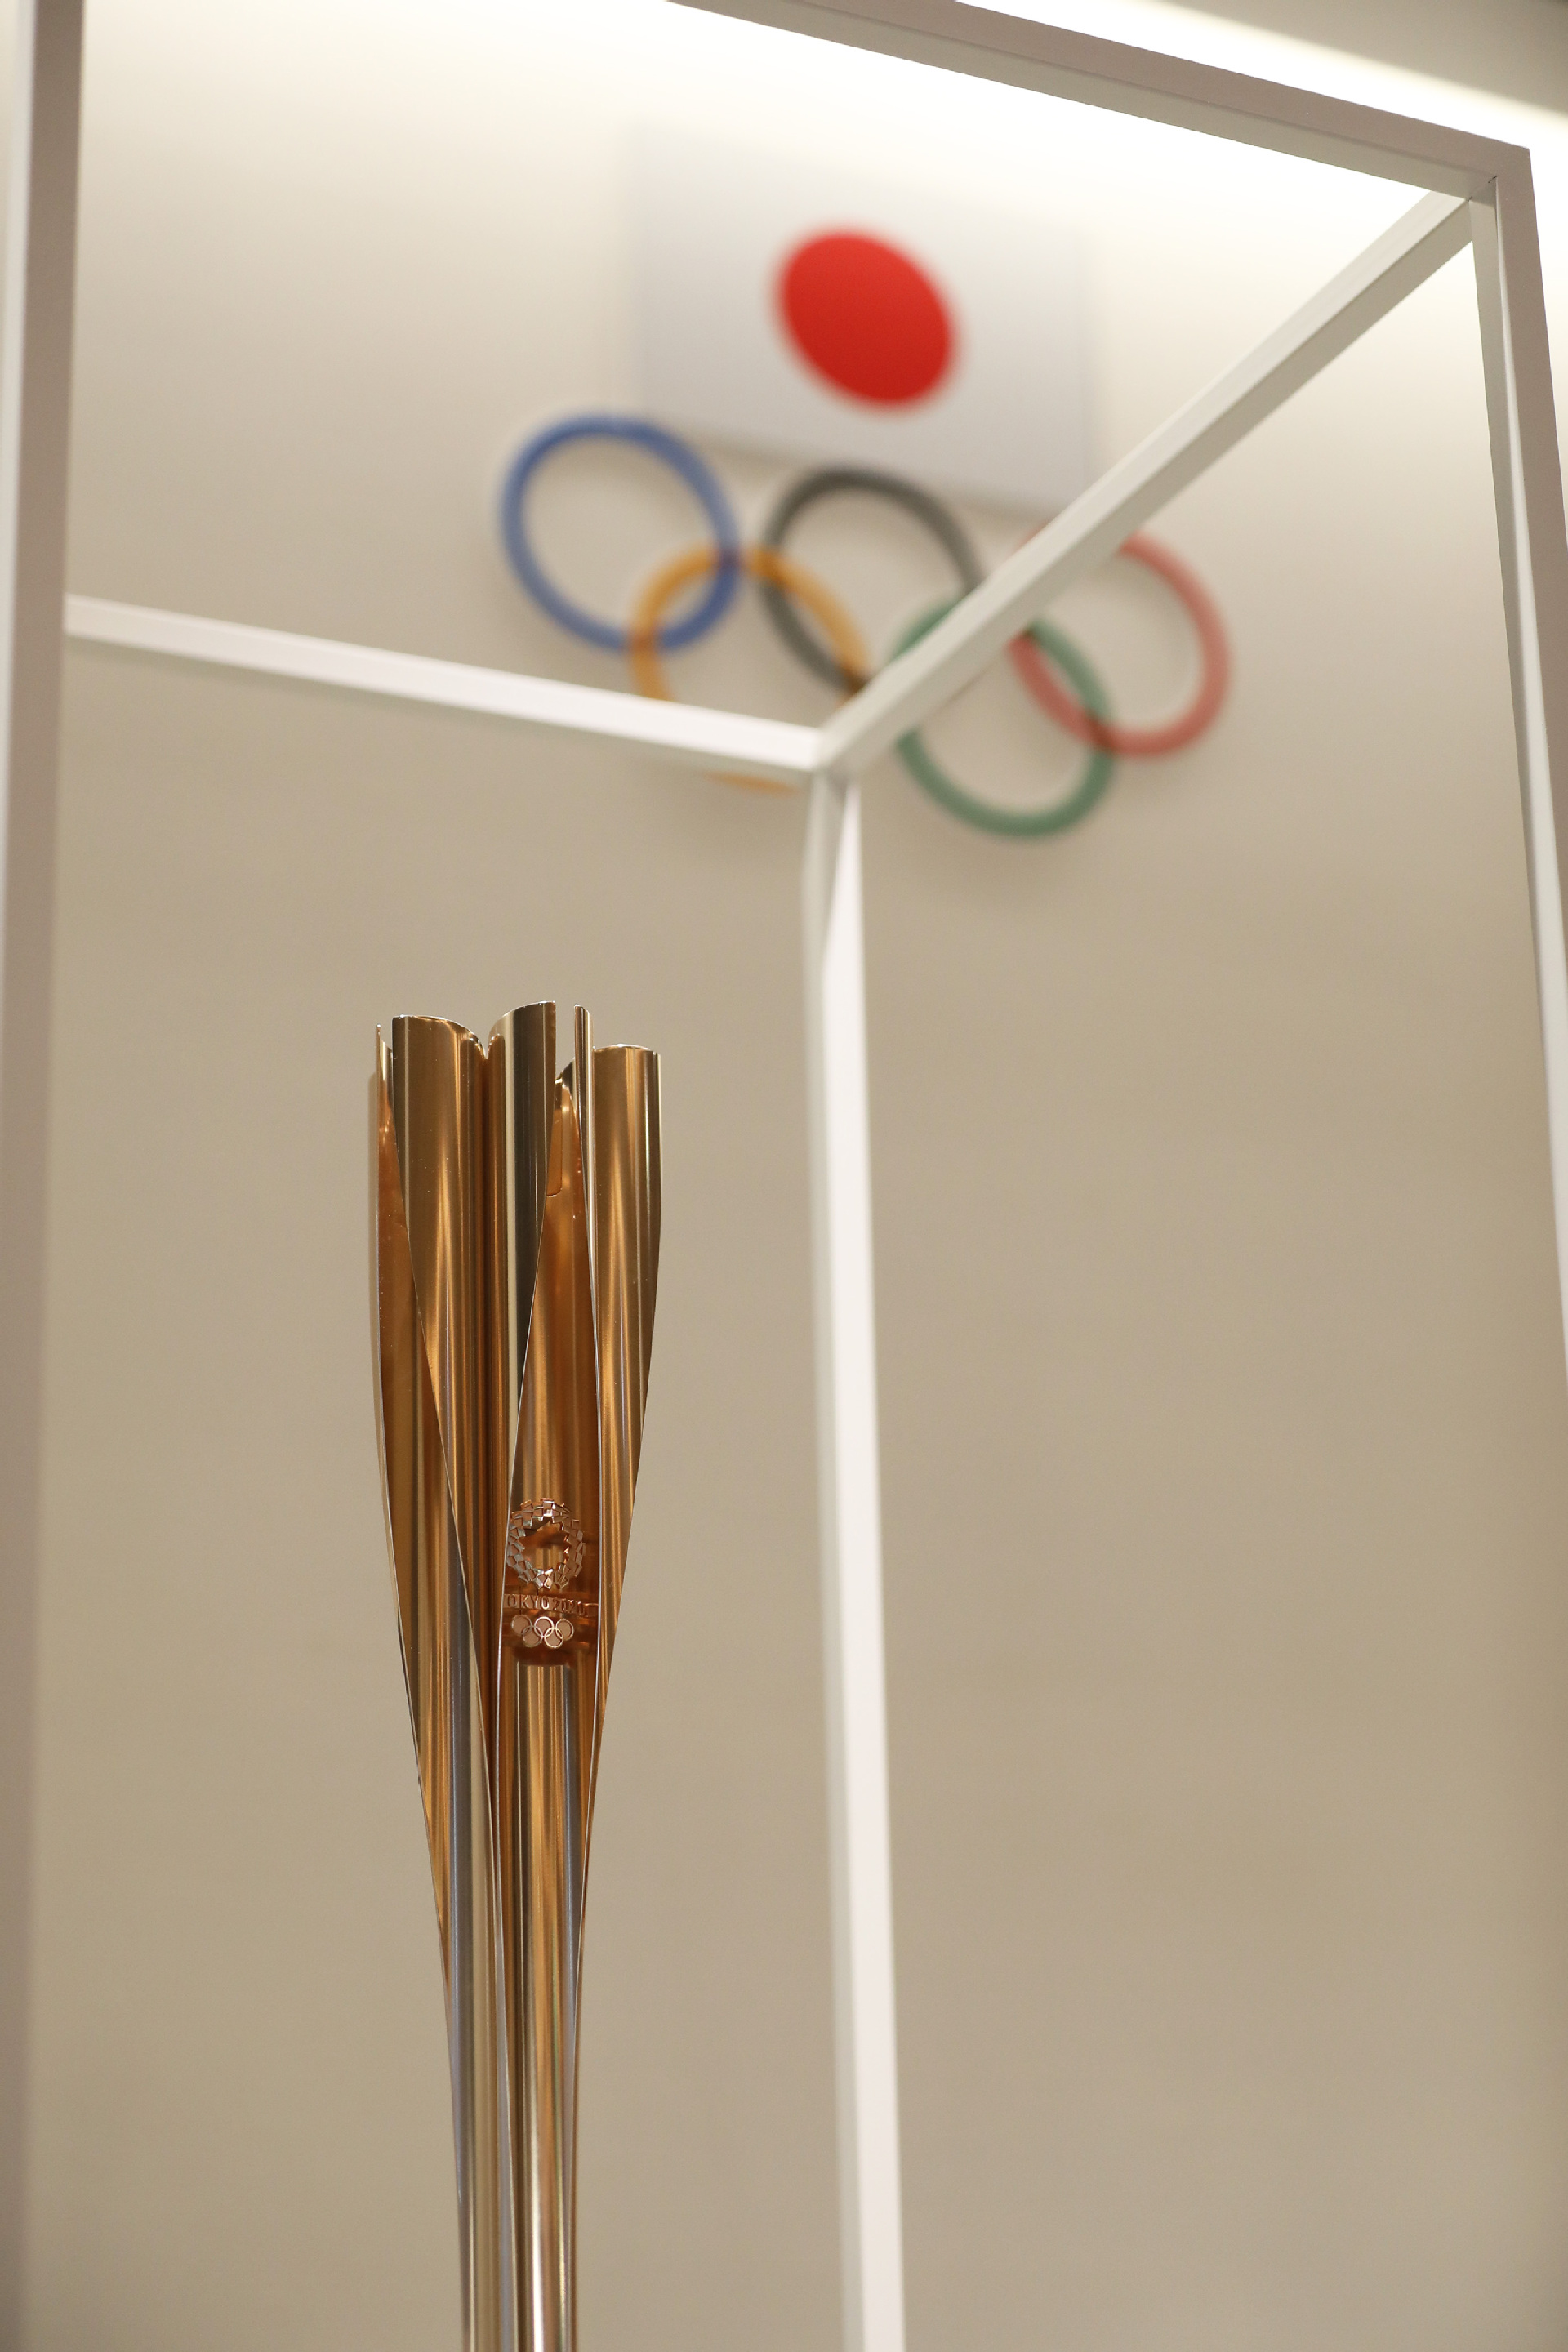 东京奥运会火炬图片图片